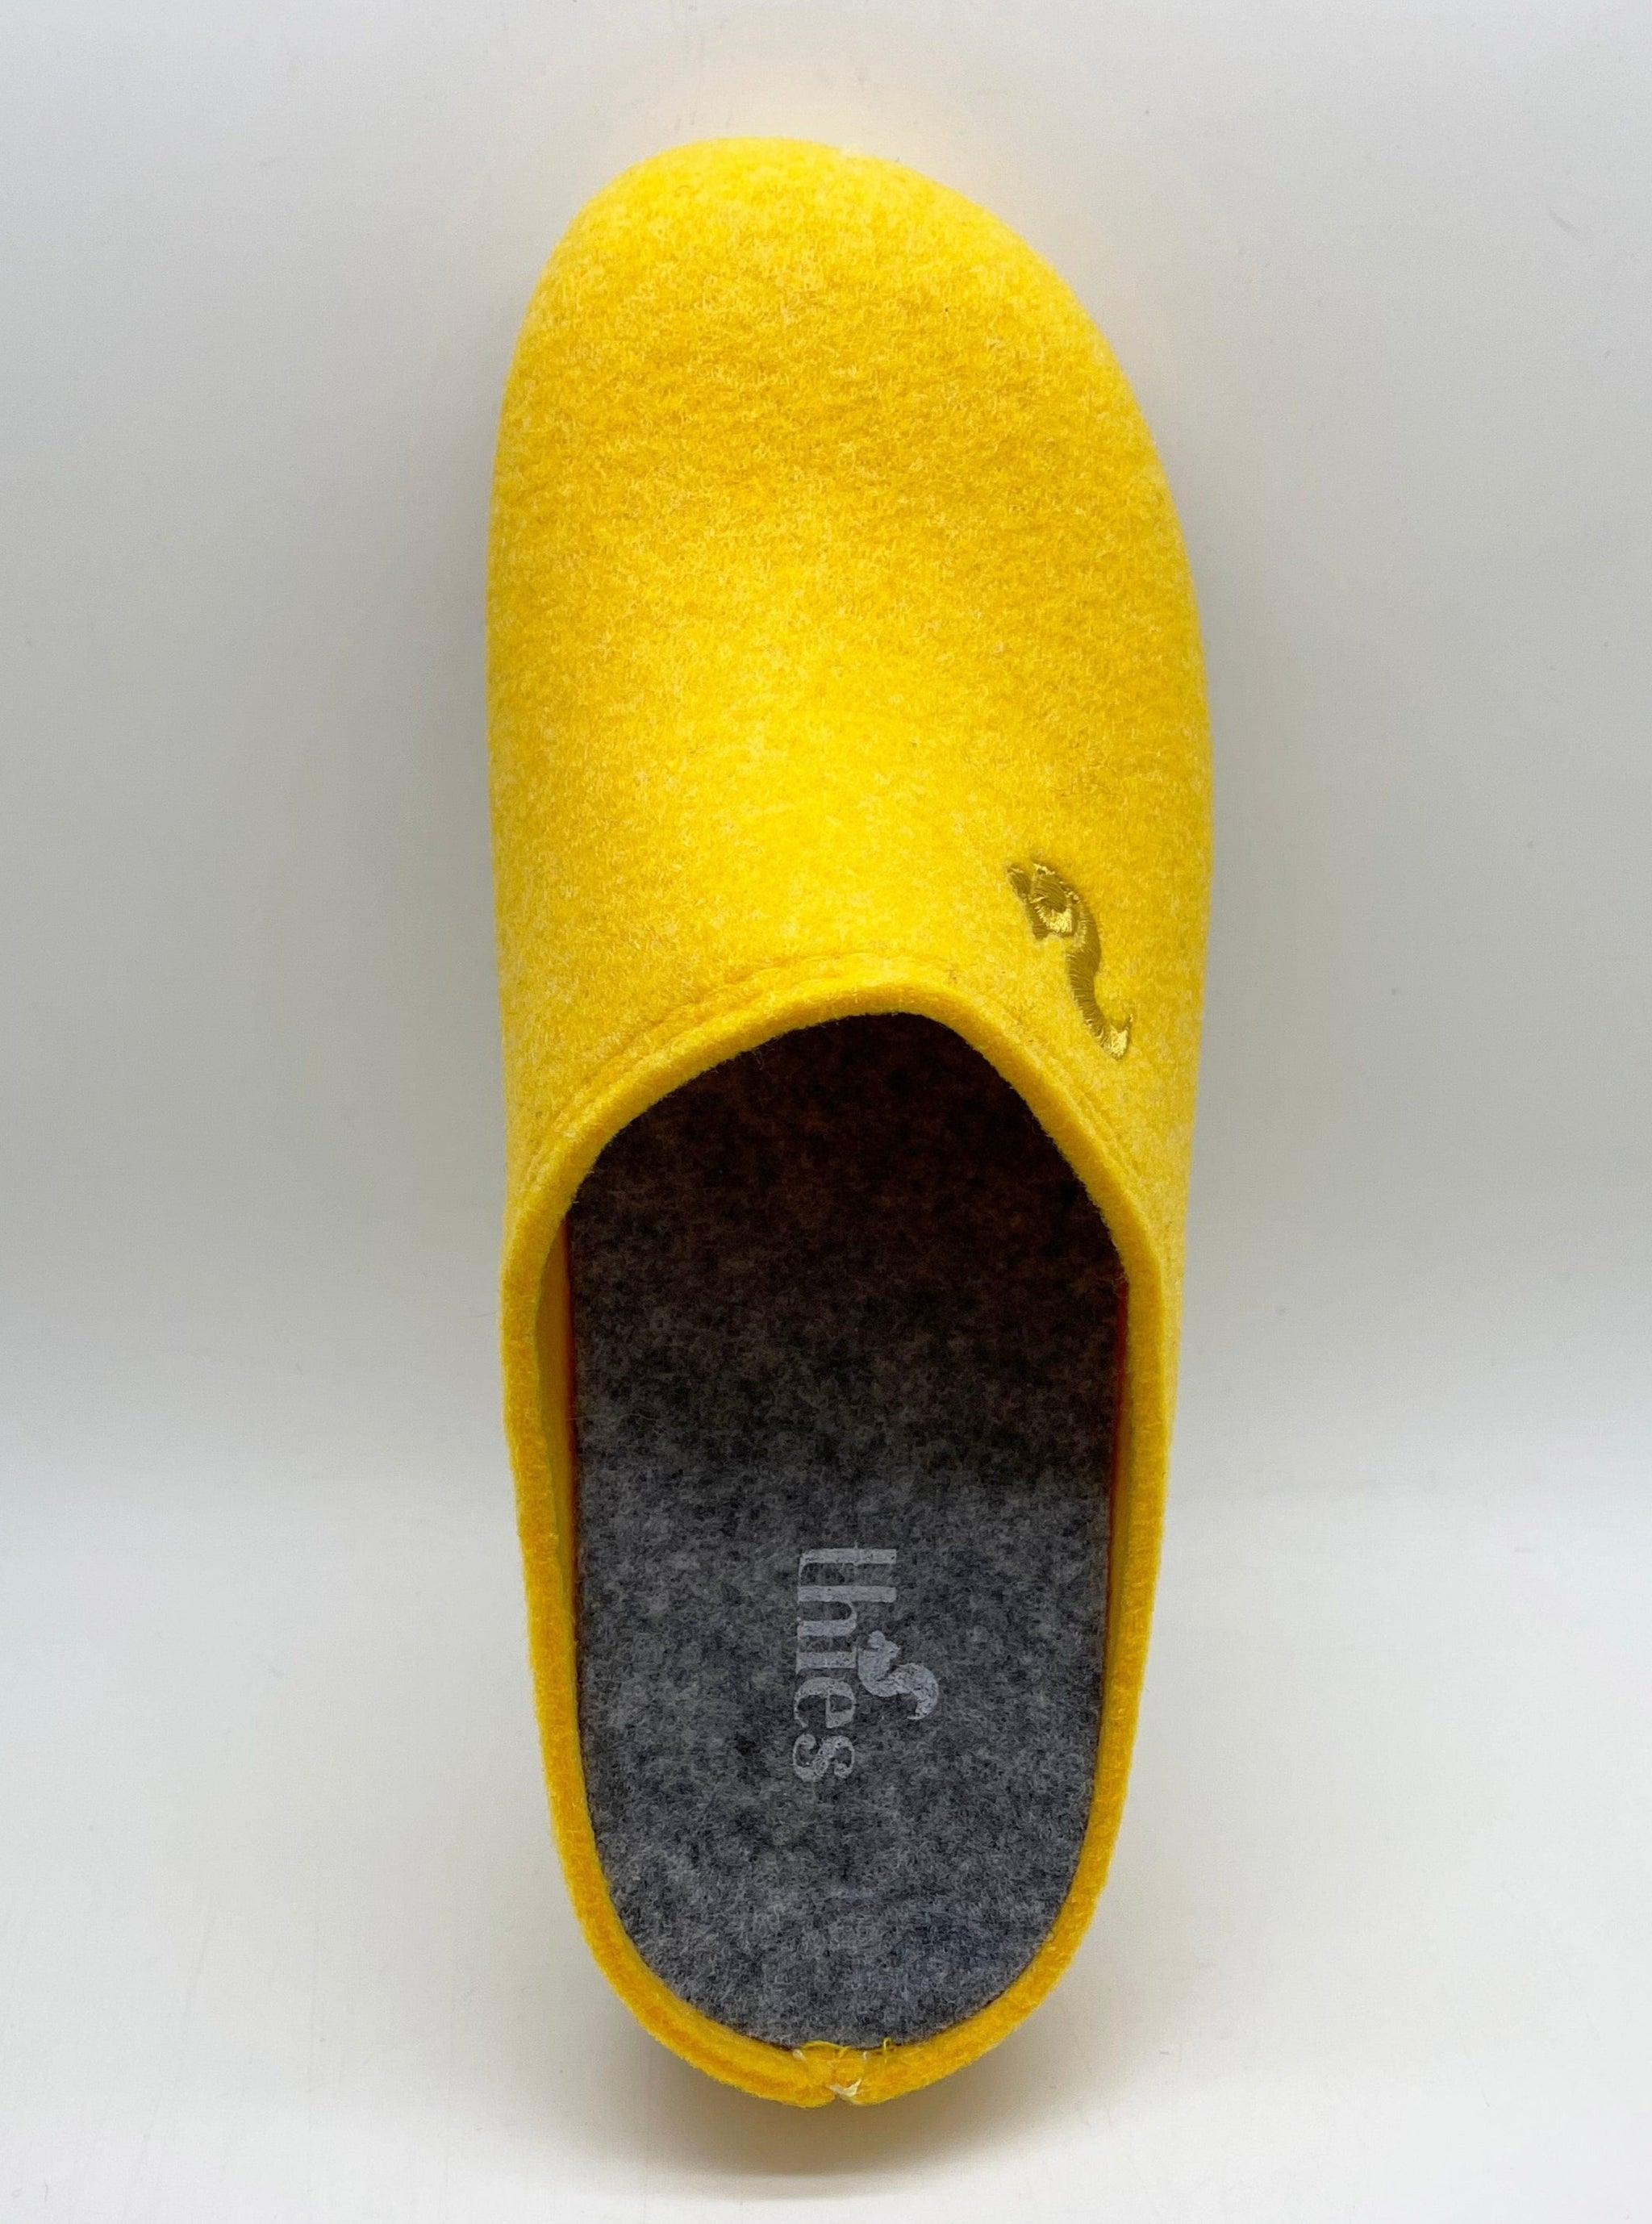 NAT 2 fodtøj thies 1856 ® Genbrugt PET Slipper vegansk gul (W/X) bæredygtig mode etisk mode